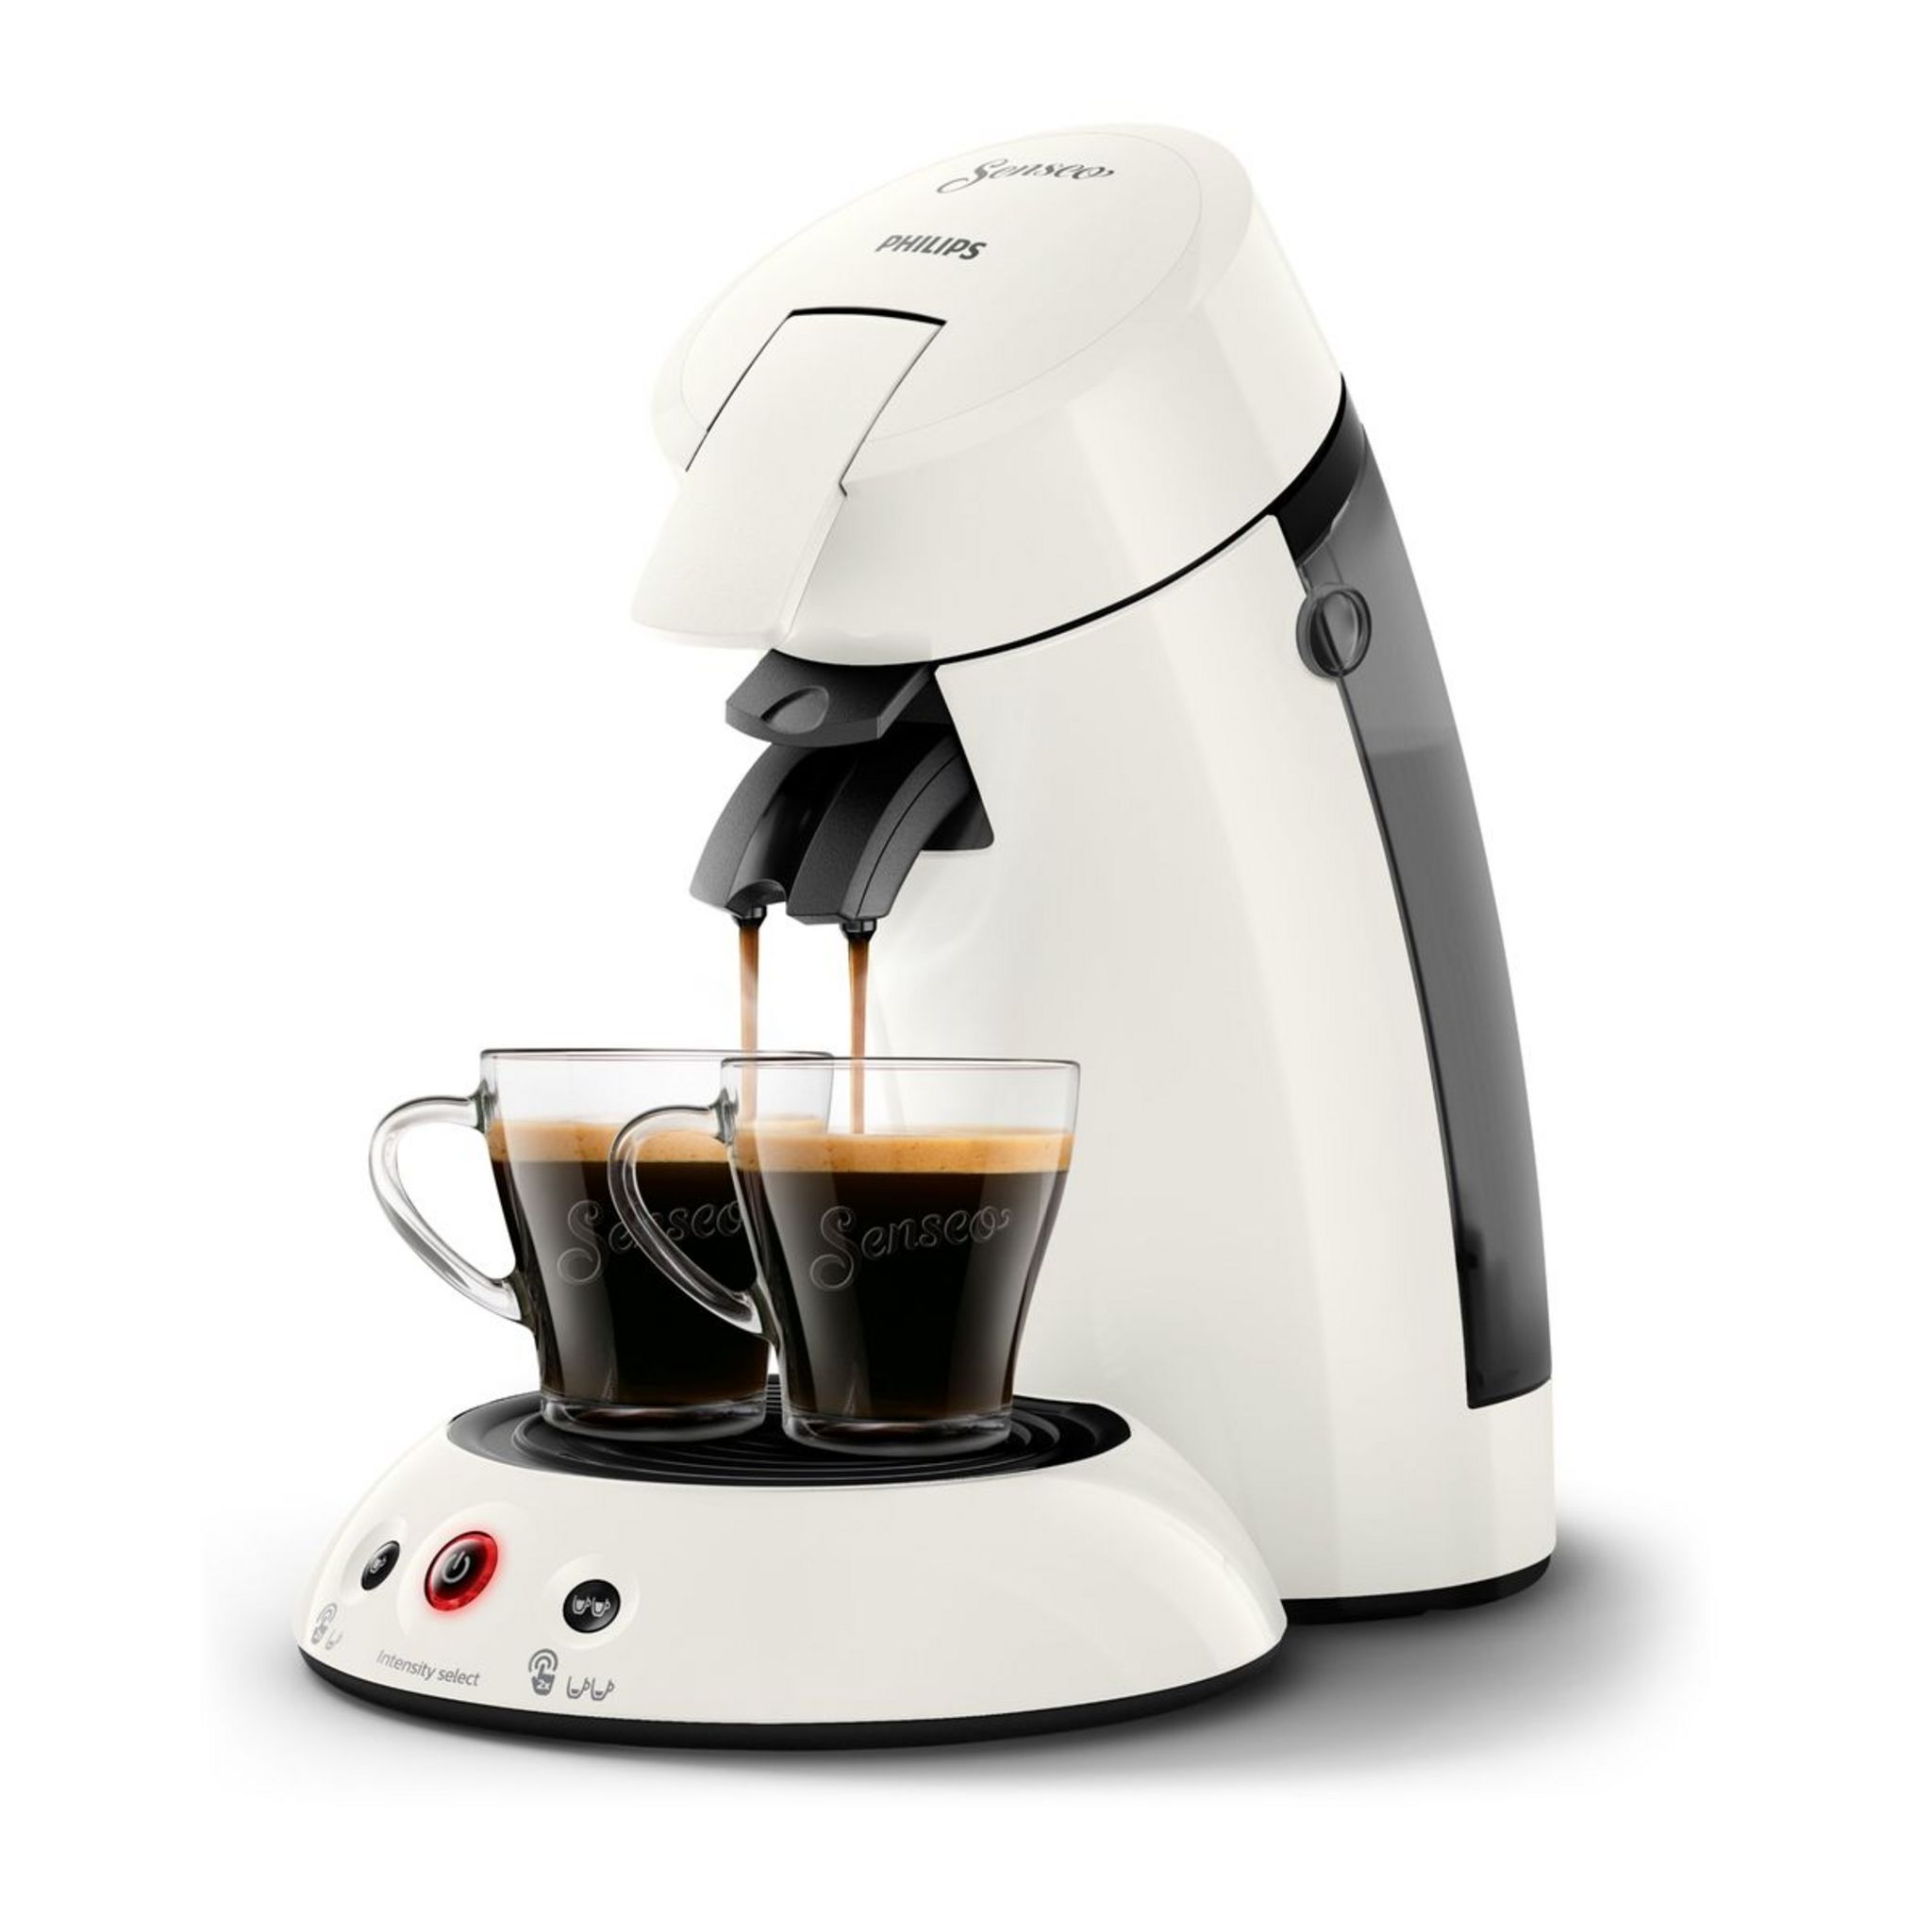 Machine à café dosettes philips senseo select csa240/31 - nougat - La Poste